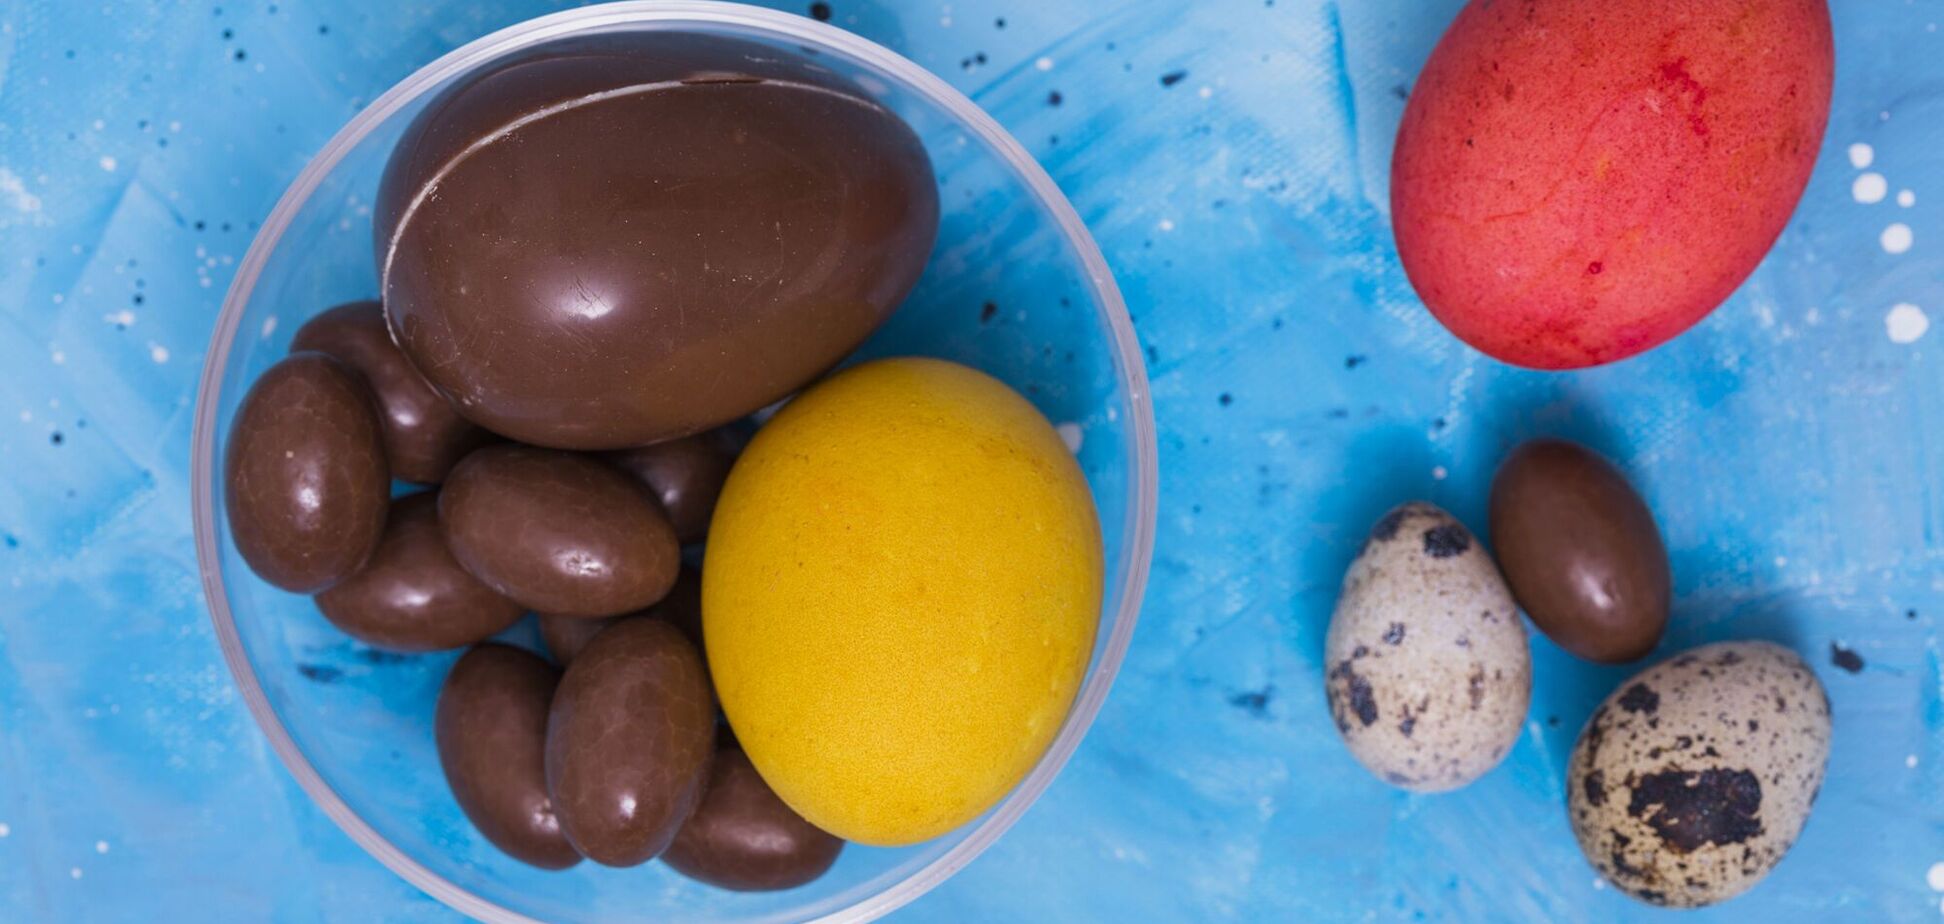 Шоколадні яйця до Великодня: як здивувати рідних 